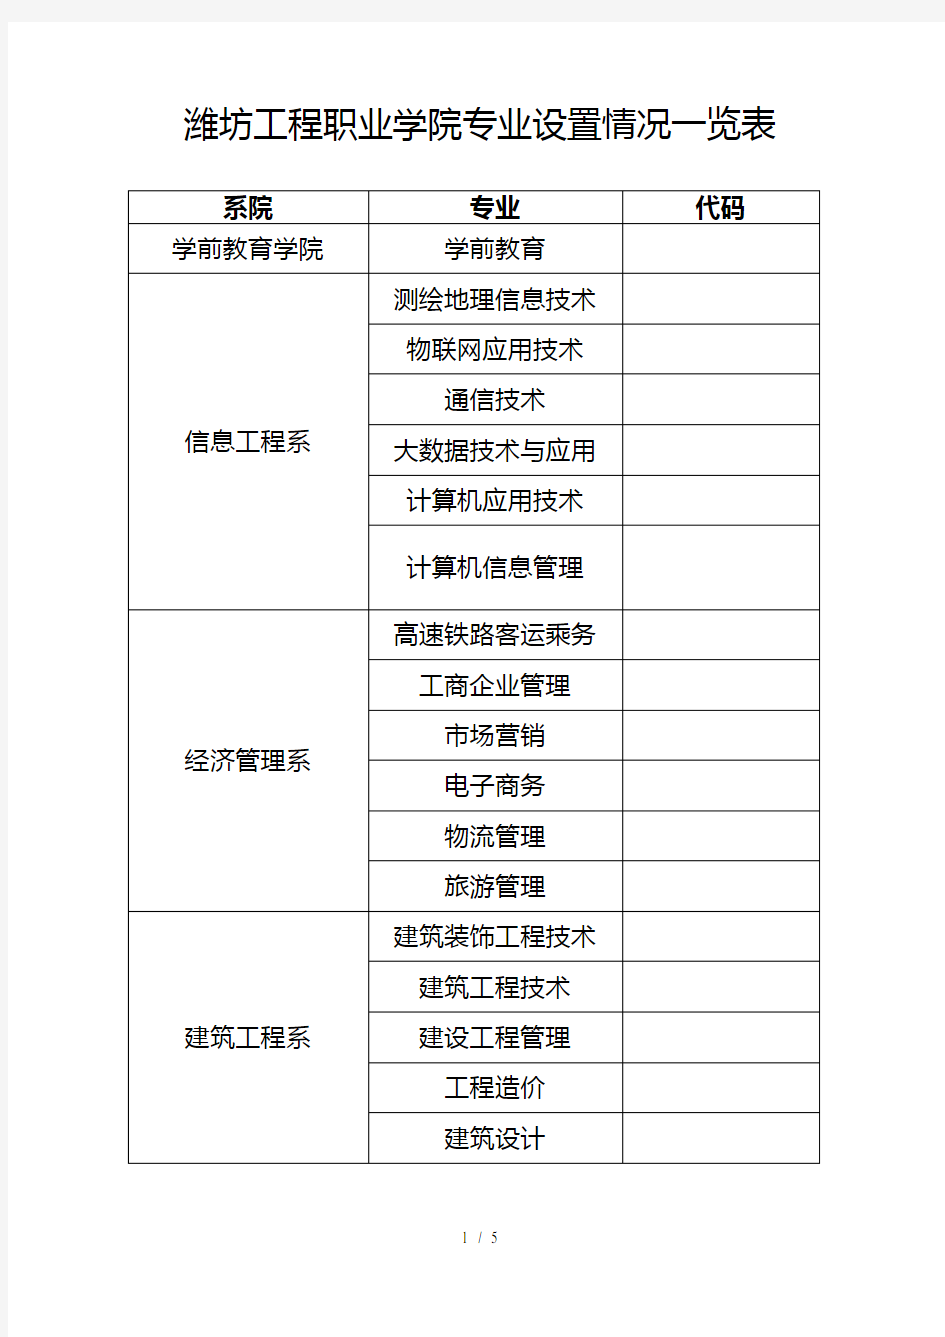 潍坊工程职业学院专业设置情况一览表